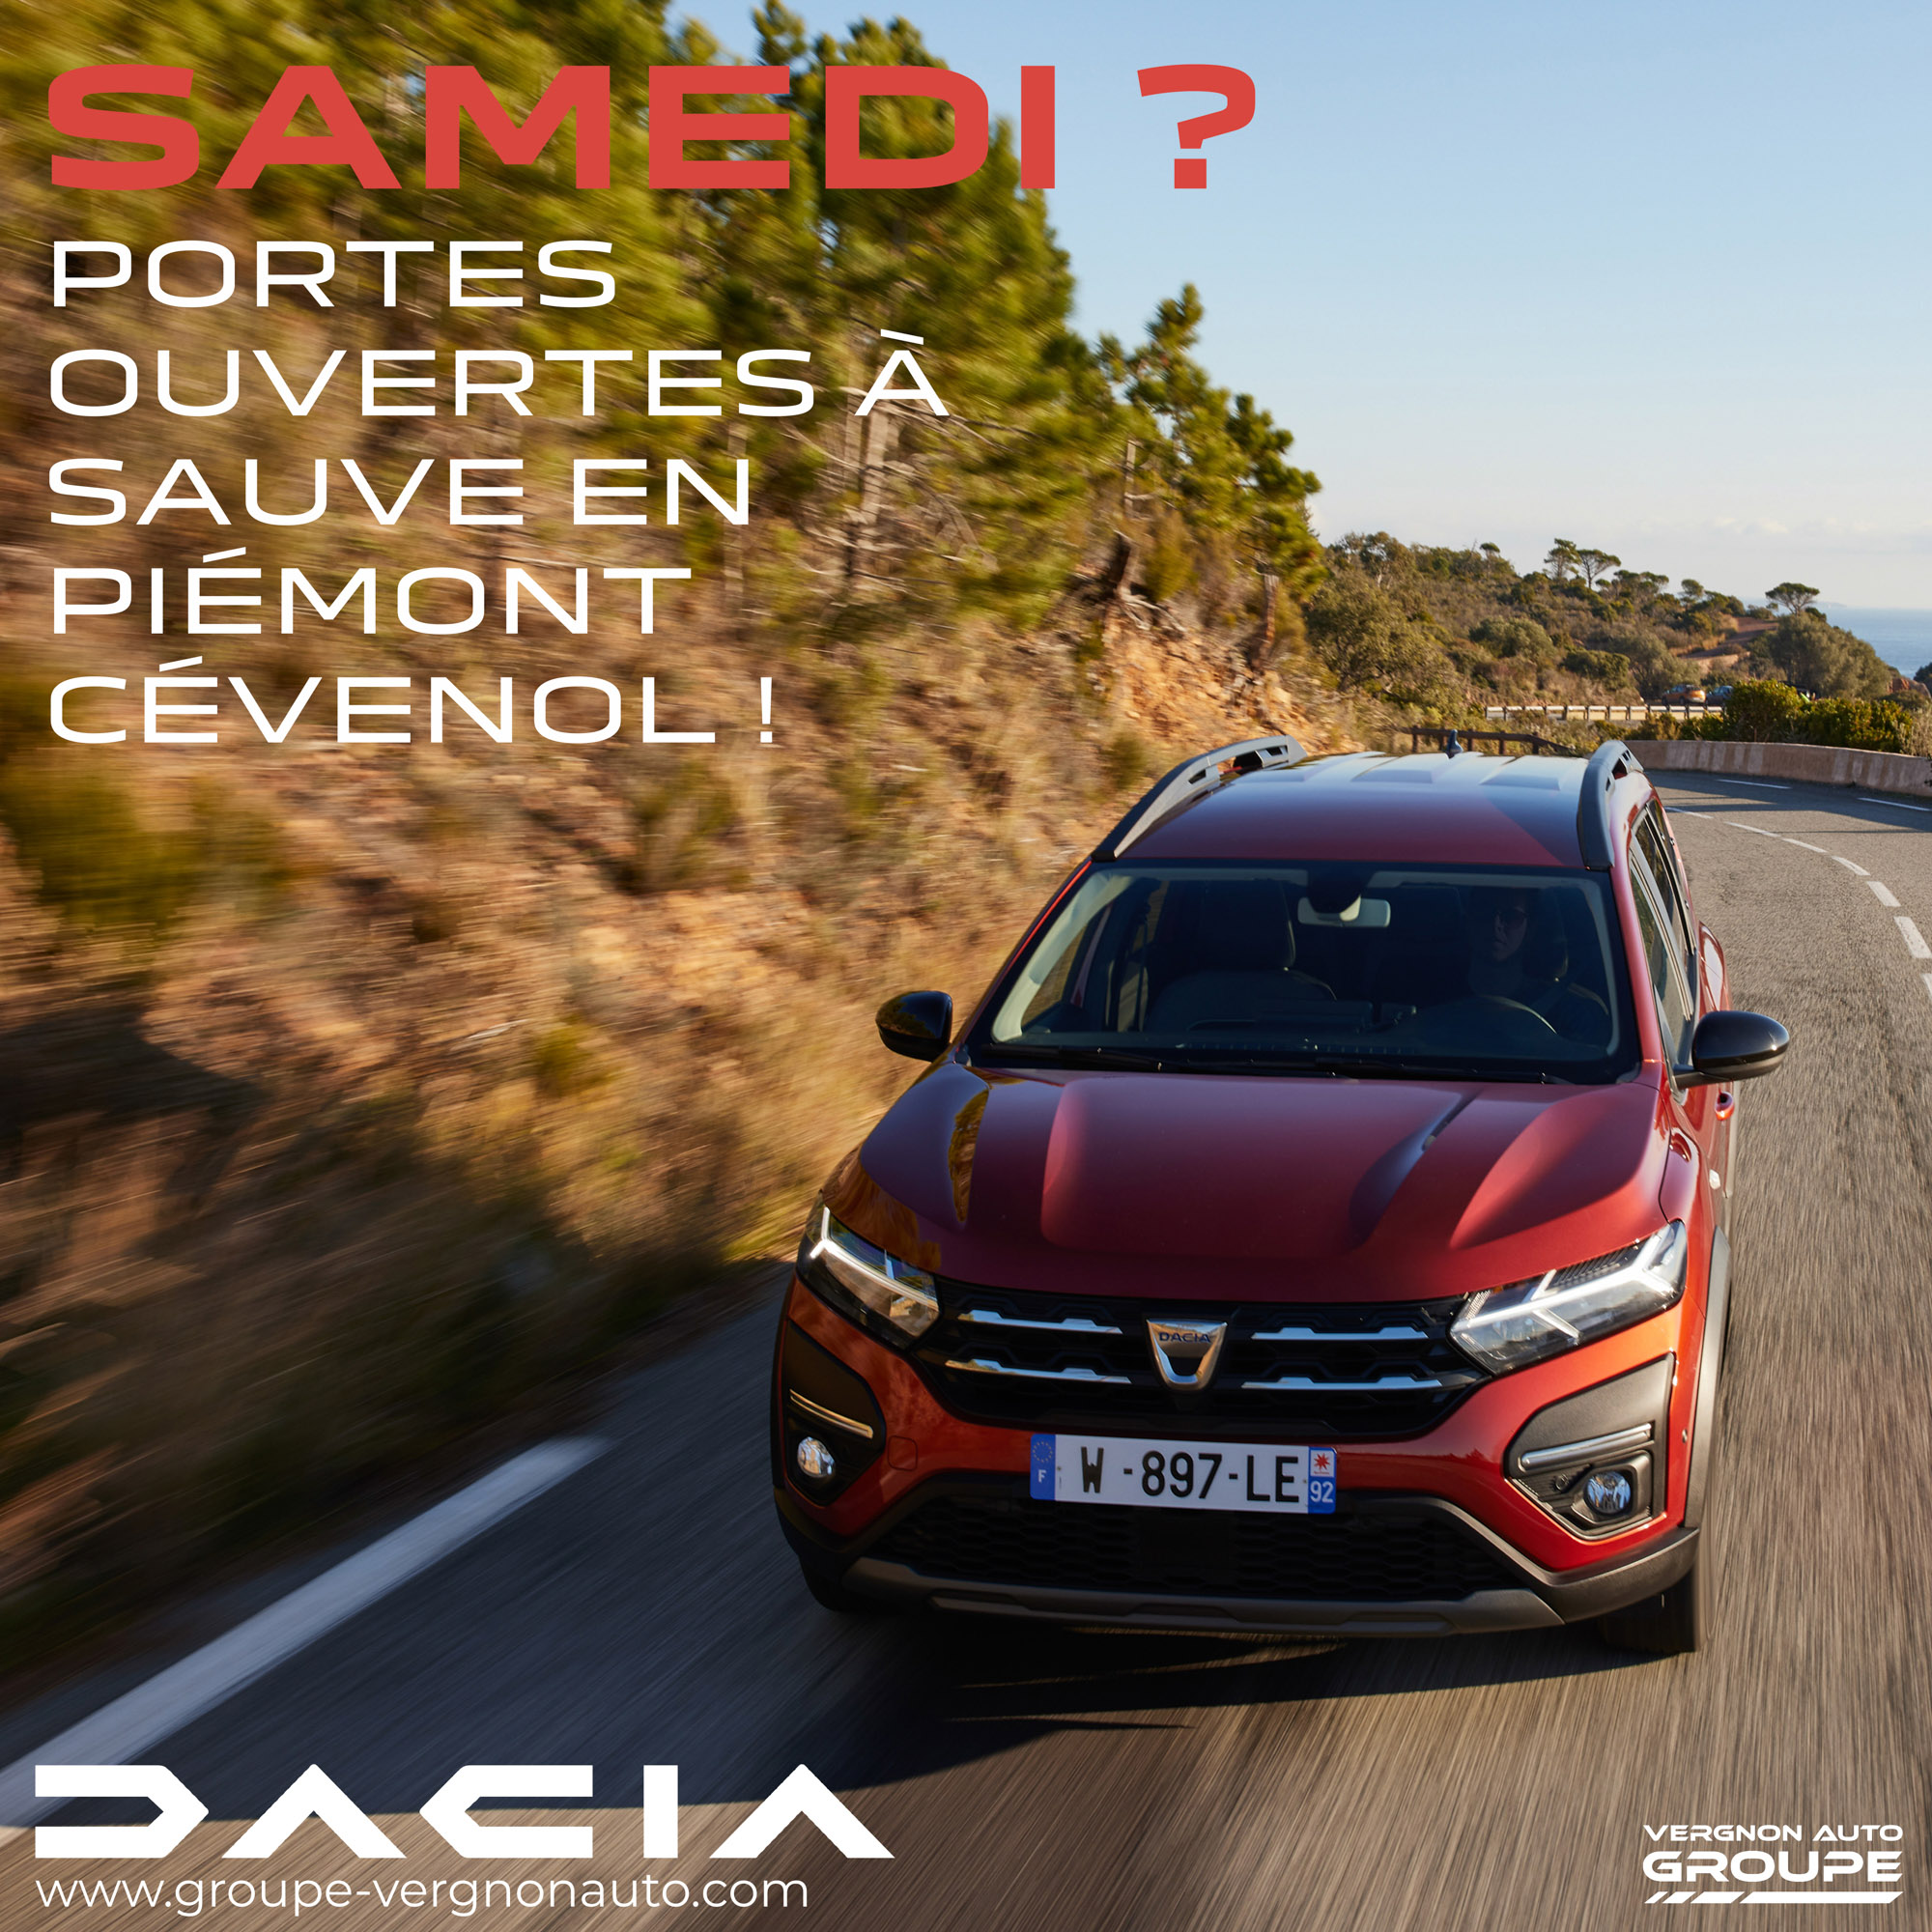 Samedi 12 mars ? C'est portes ouvertes Dacia à Sauve, en Piémont cévenol, dans le Gard (30) !